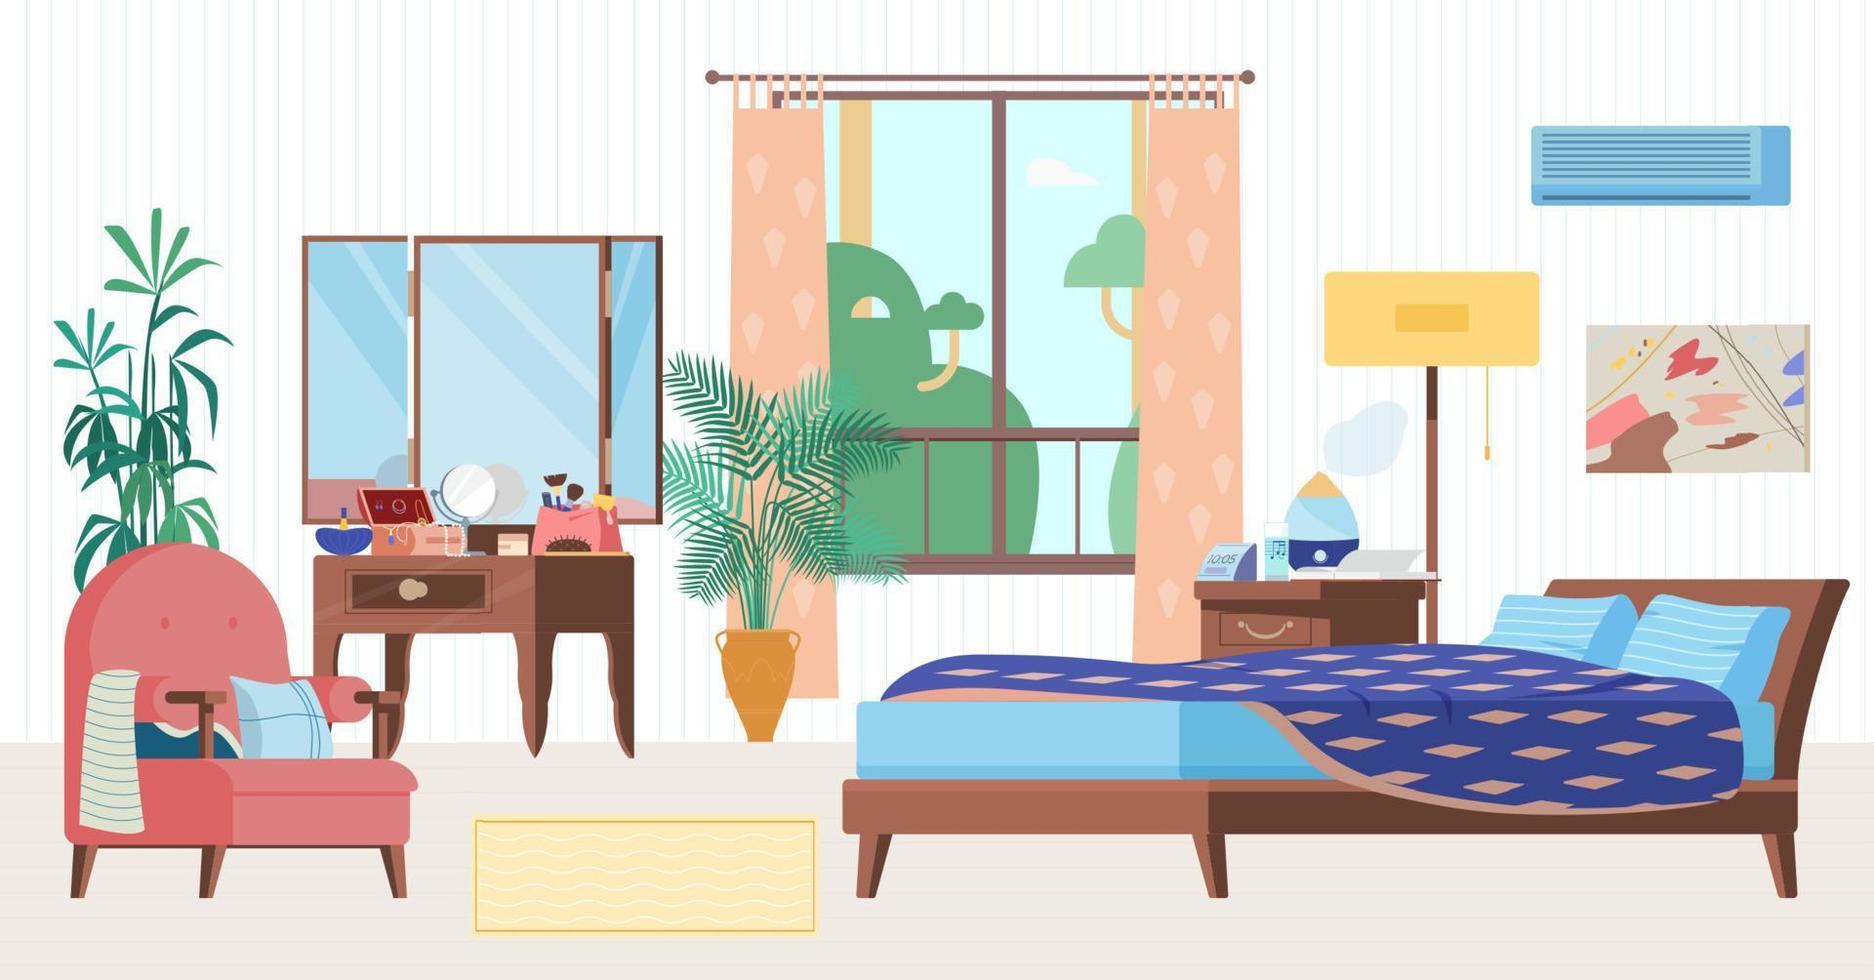 gezellige slaapkamer interieur platte vectorillustratie. houten meubels, bed, fauteuil, kaptafel, raam, nachtkastje met luchtbevochtiger, klok, planten. vector